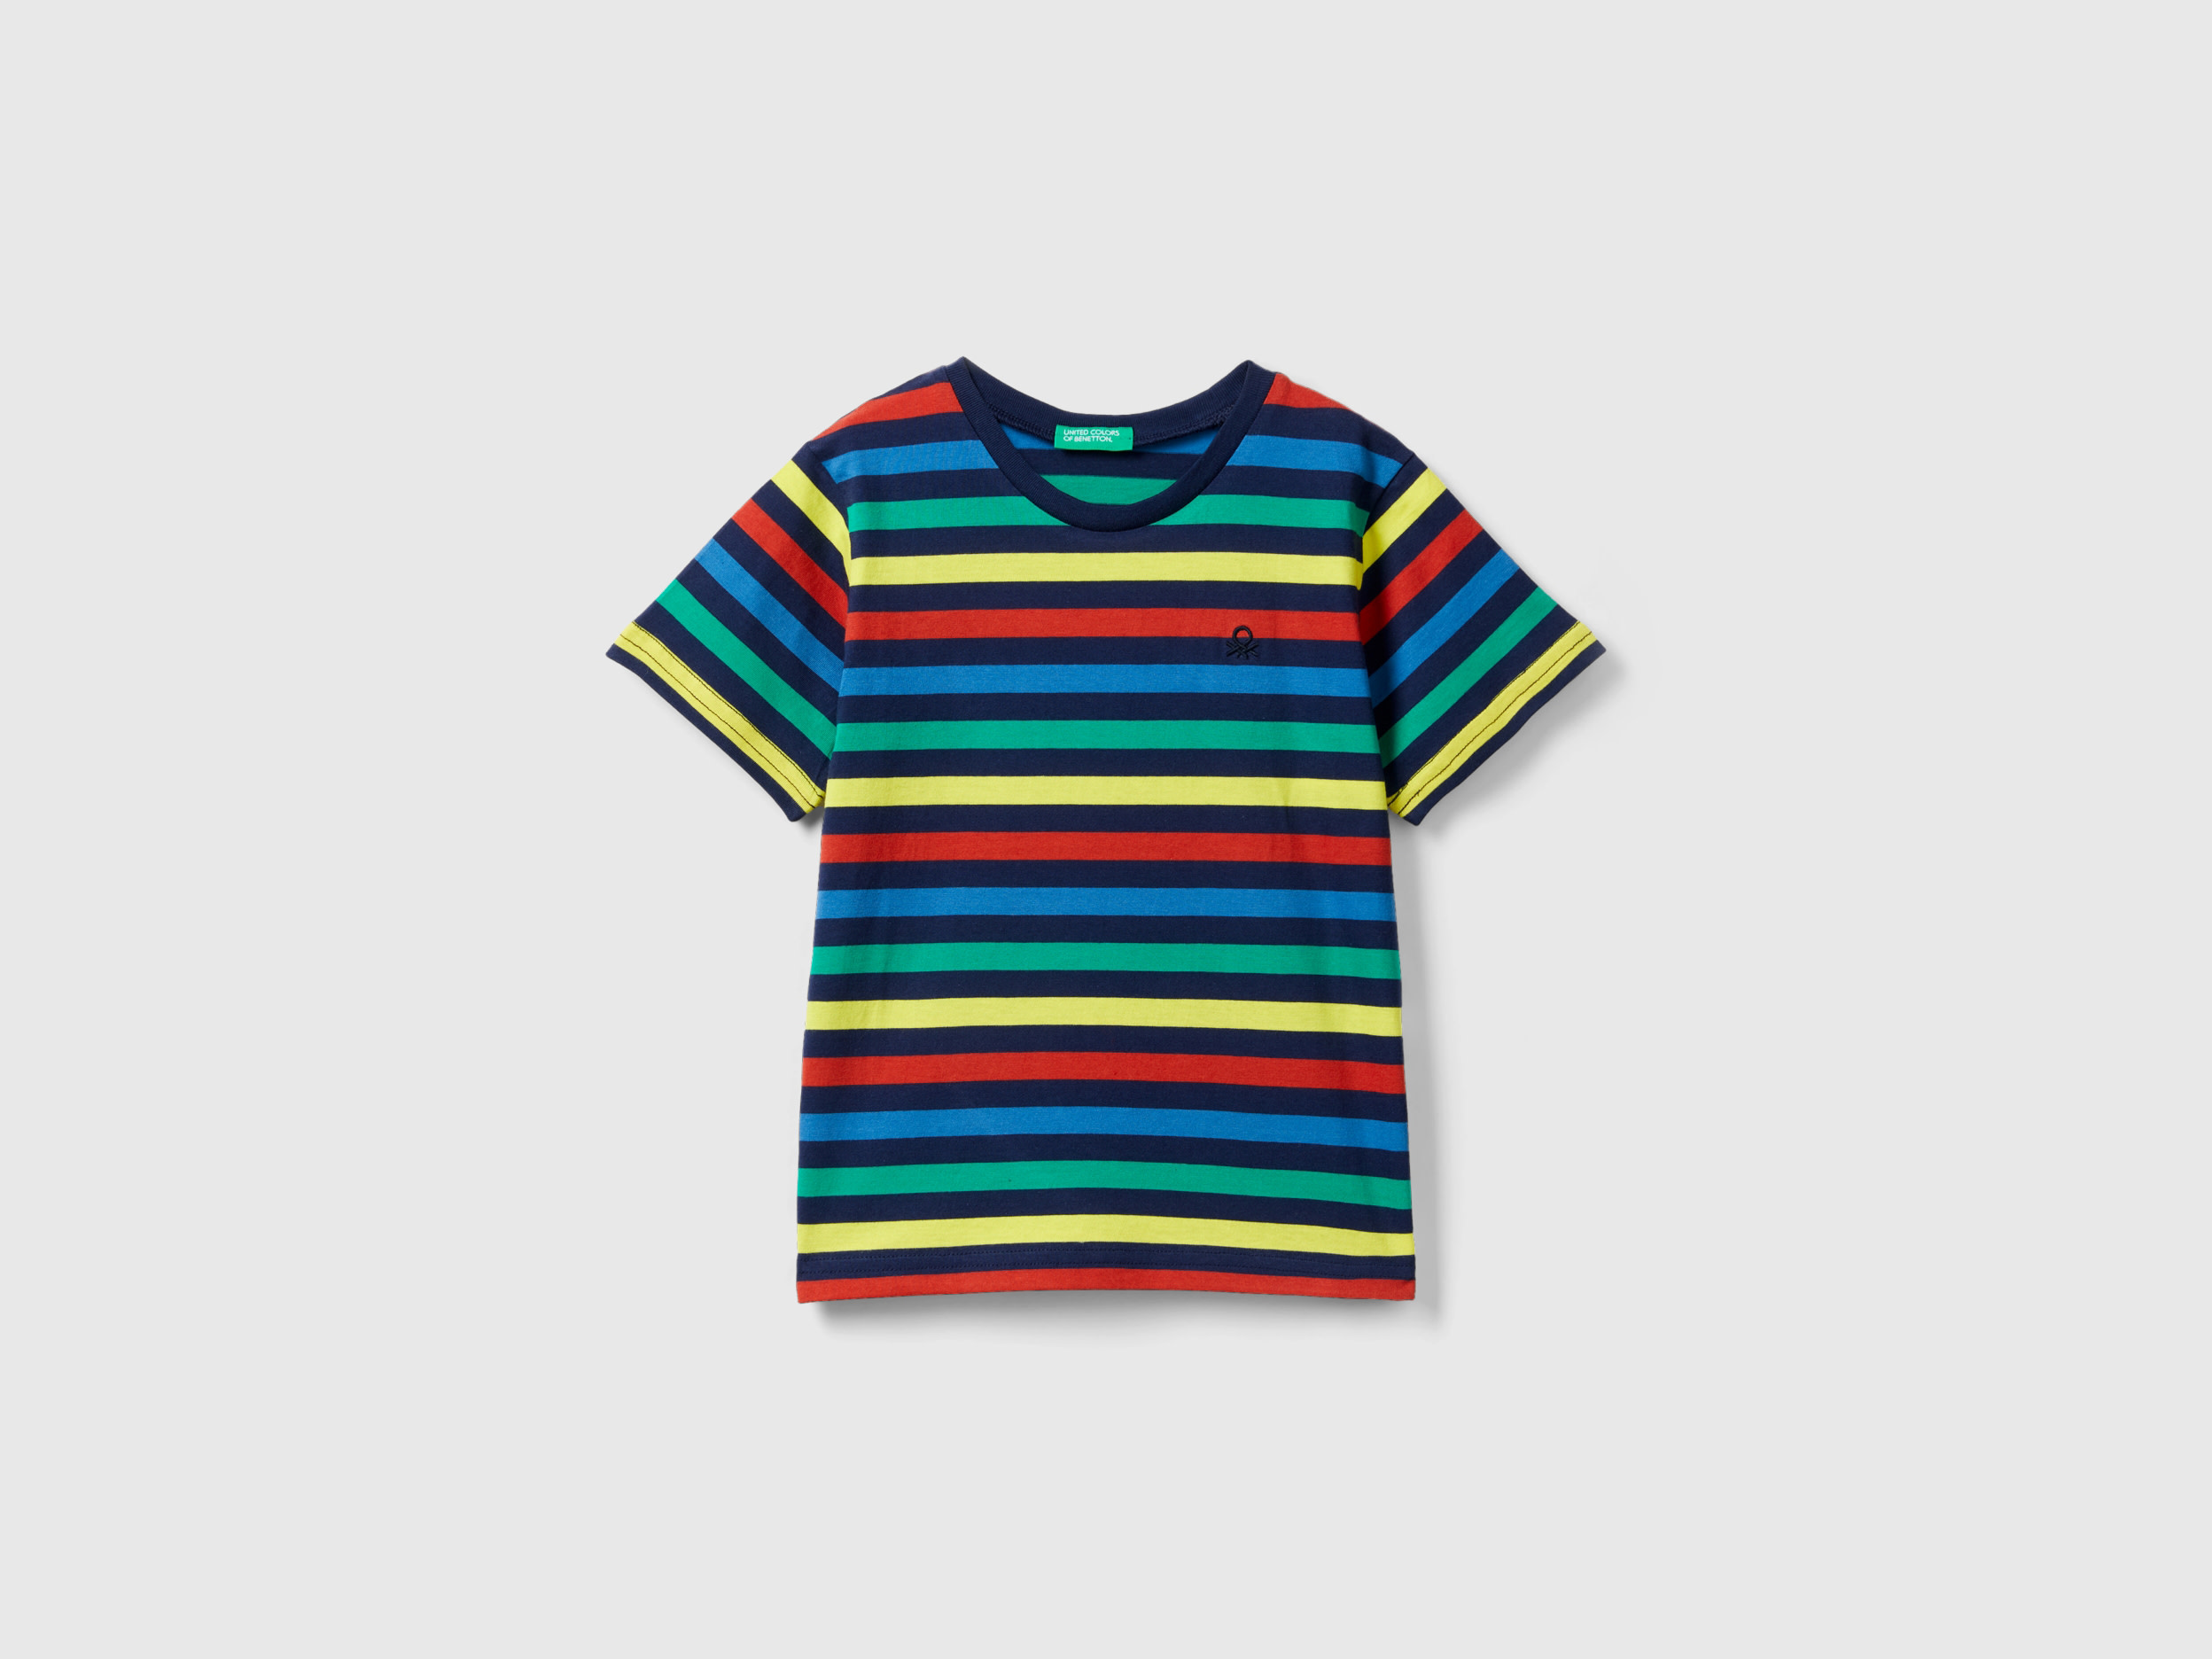 Benetton, Striped 100% Cotton T-shirt, size 4-5, Multi-color, Kids